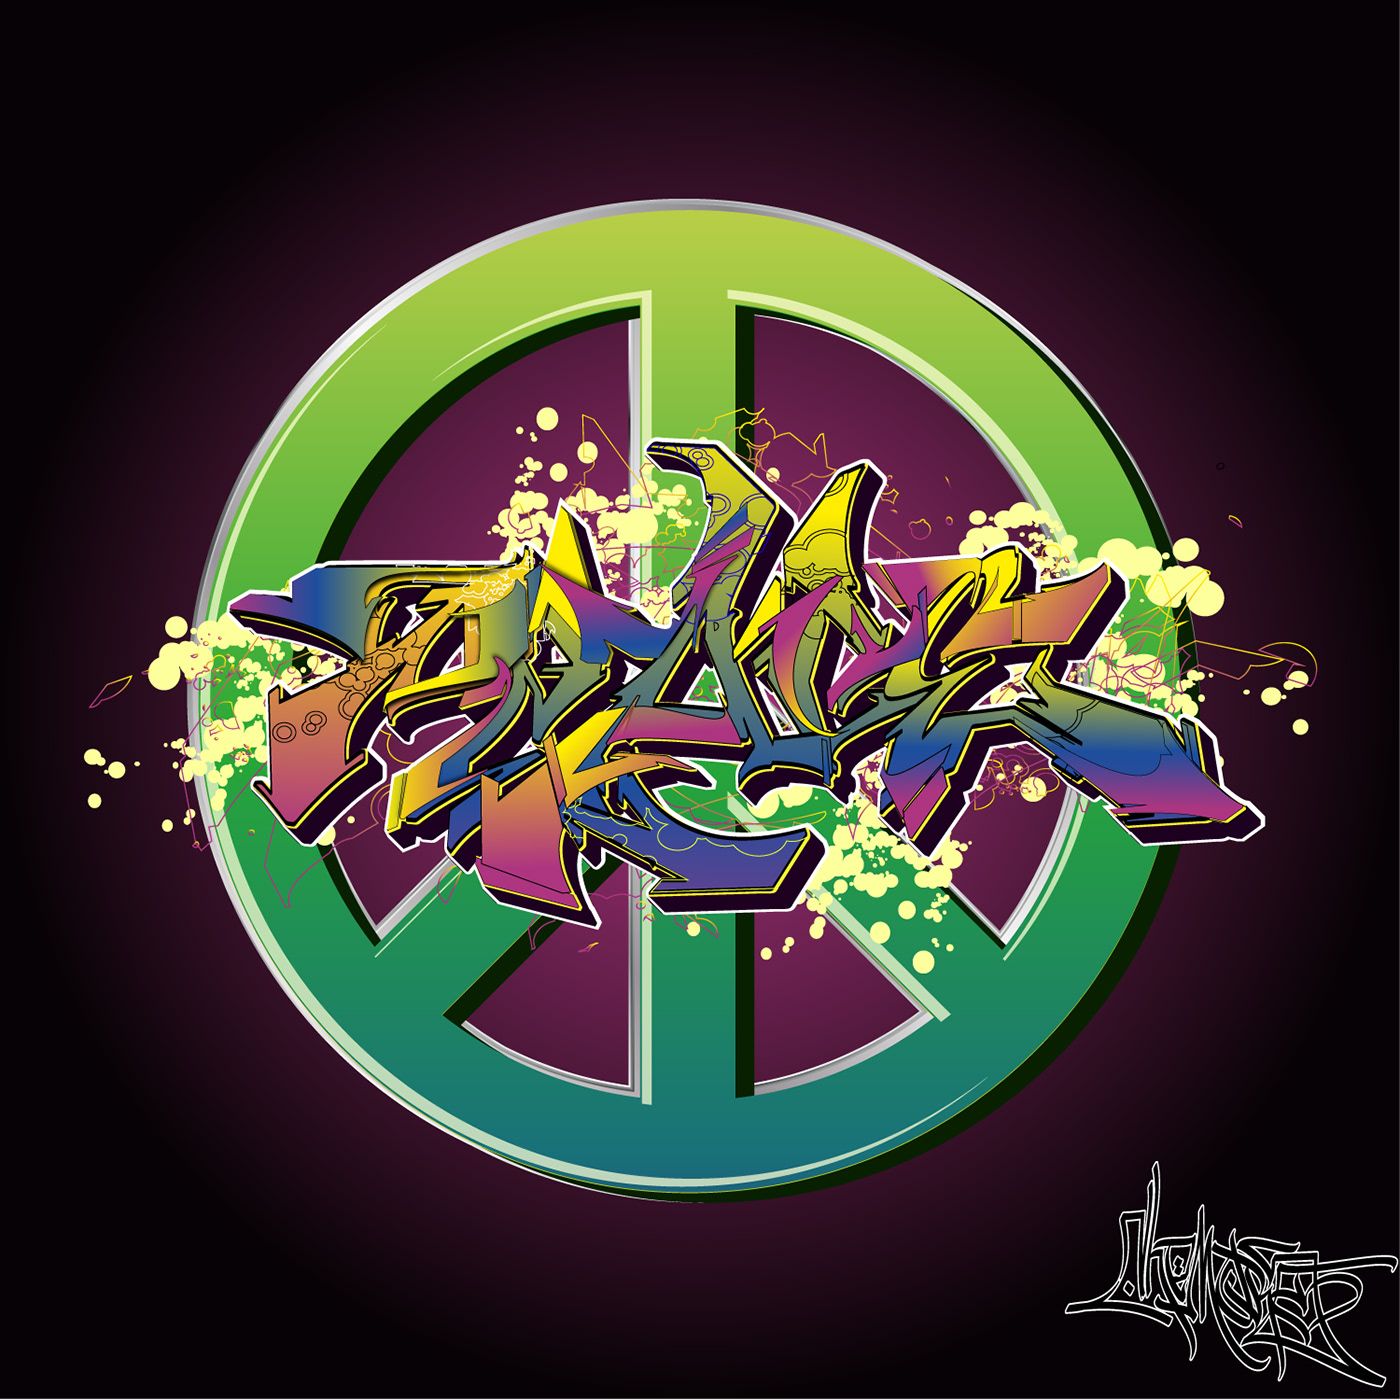 Graffiti Digital Art  artwork digital illustration adobe illustrator vector graffiti art lettering graffiti font wildstyle